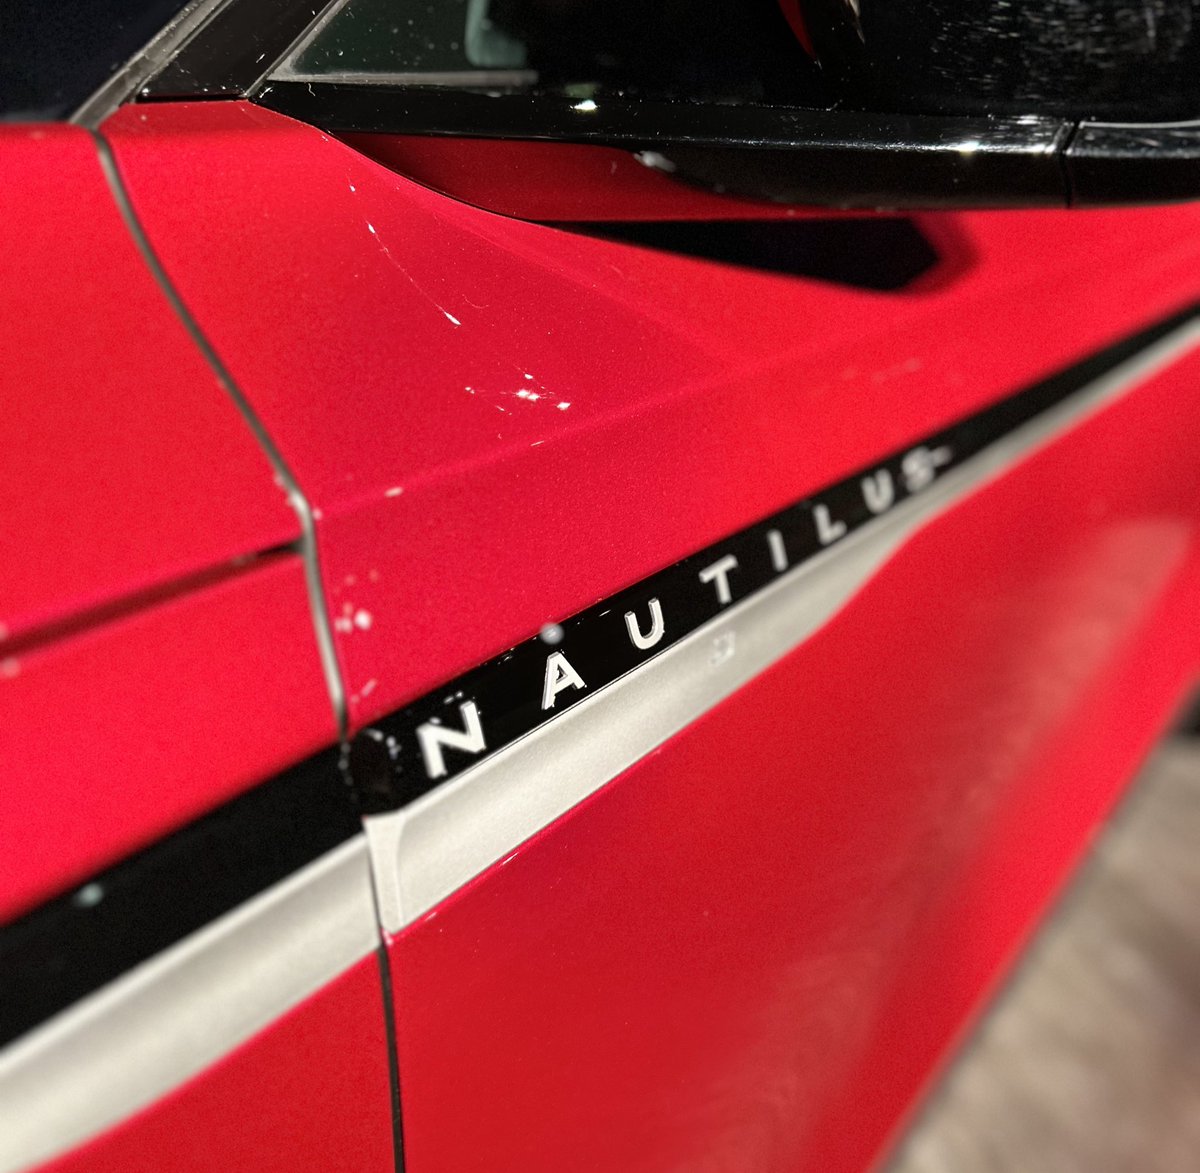 Estuvimos hoy en la presentación del SUV de lujo de tamaño mediano #LincolnNautilus cuenta con una extraordinaria conectividad y personalización.

Gran calidad, seguridad y diseño con legado.

Ya está disponible en México con un precio desde $1,289,900 MXN